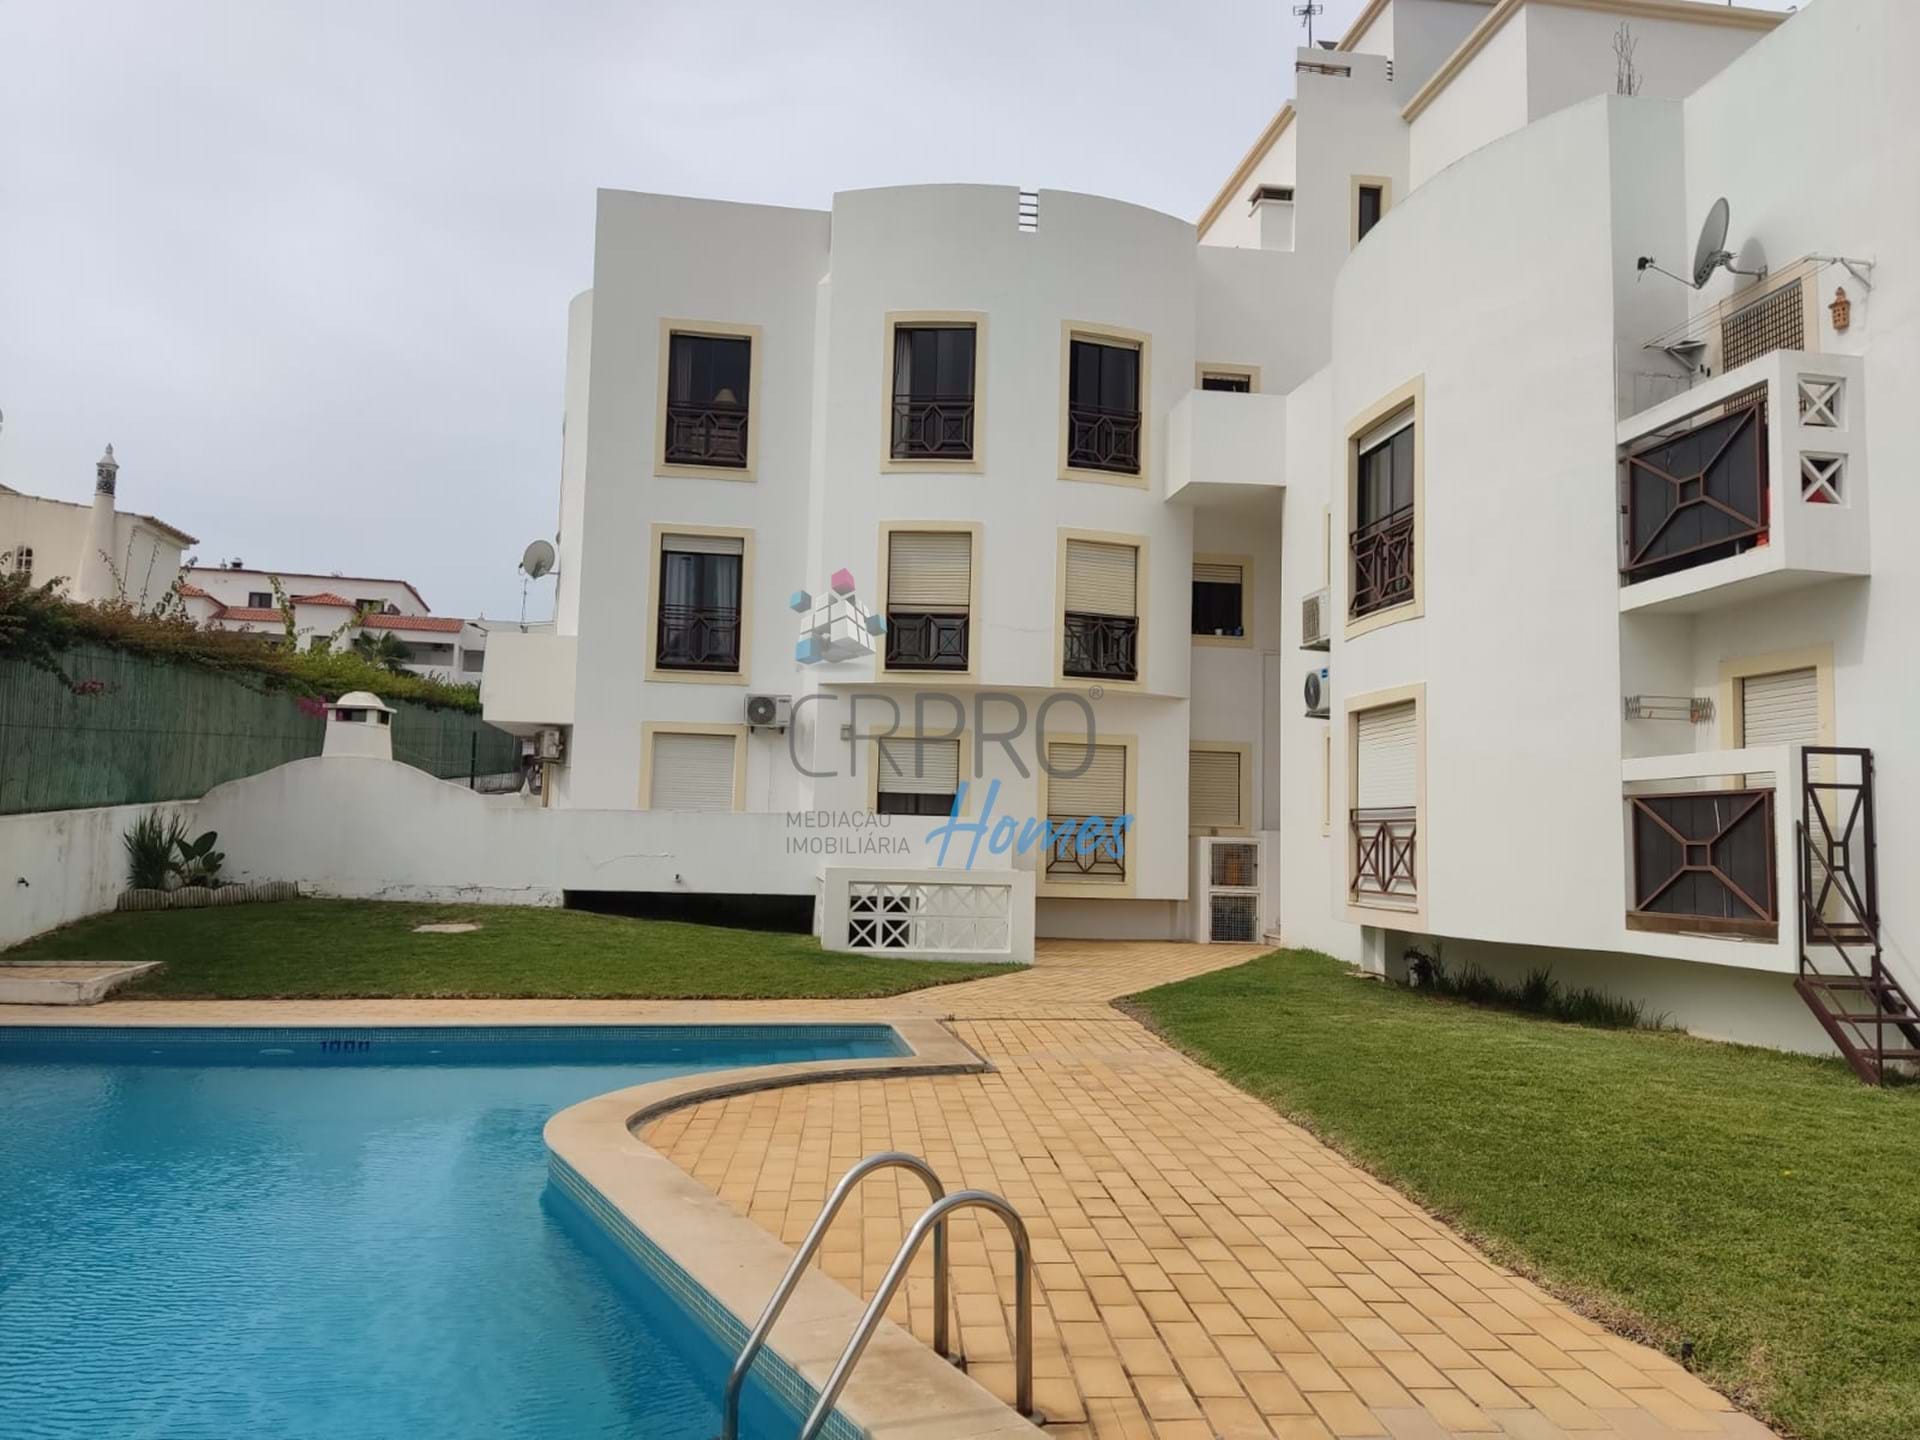 2 Bedroom apartament, with pool, for sale in Estrada de santa Eulália.